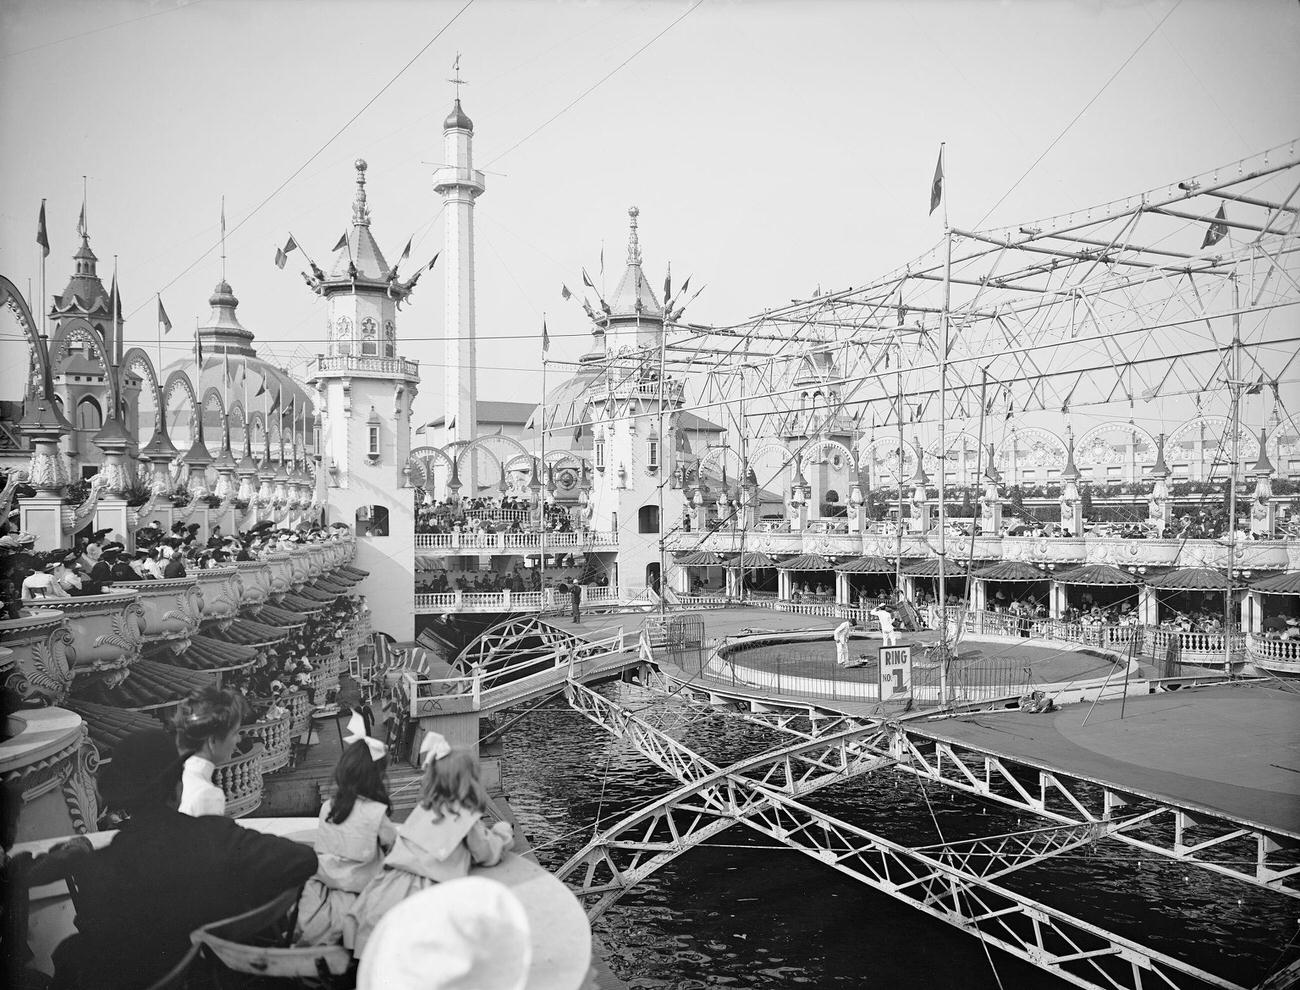 Luna Park, Coney Island, Brooklyn, 1905